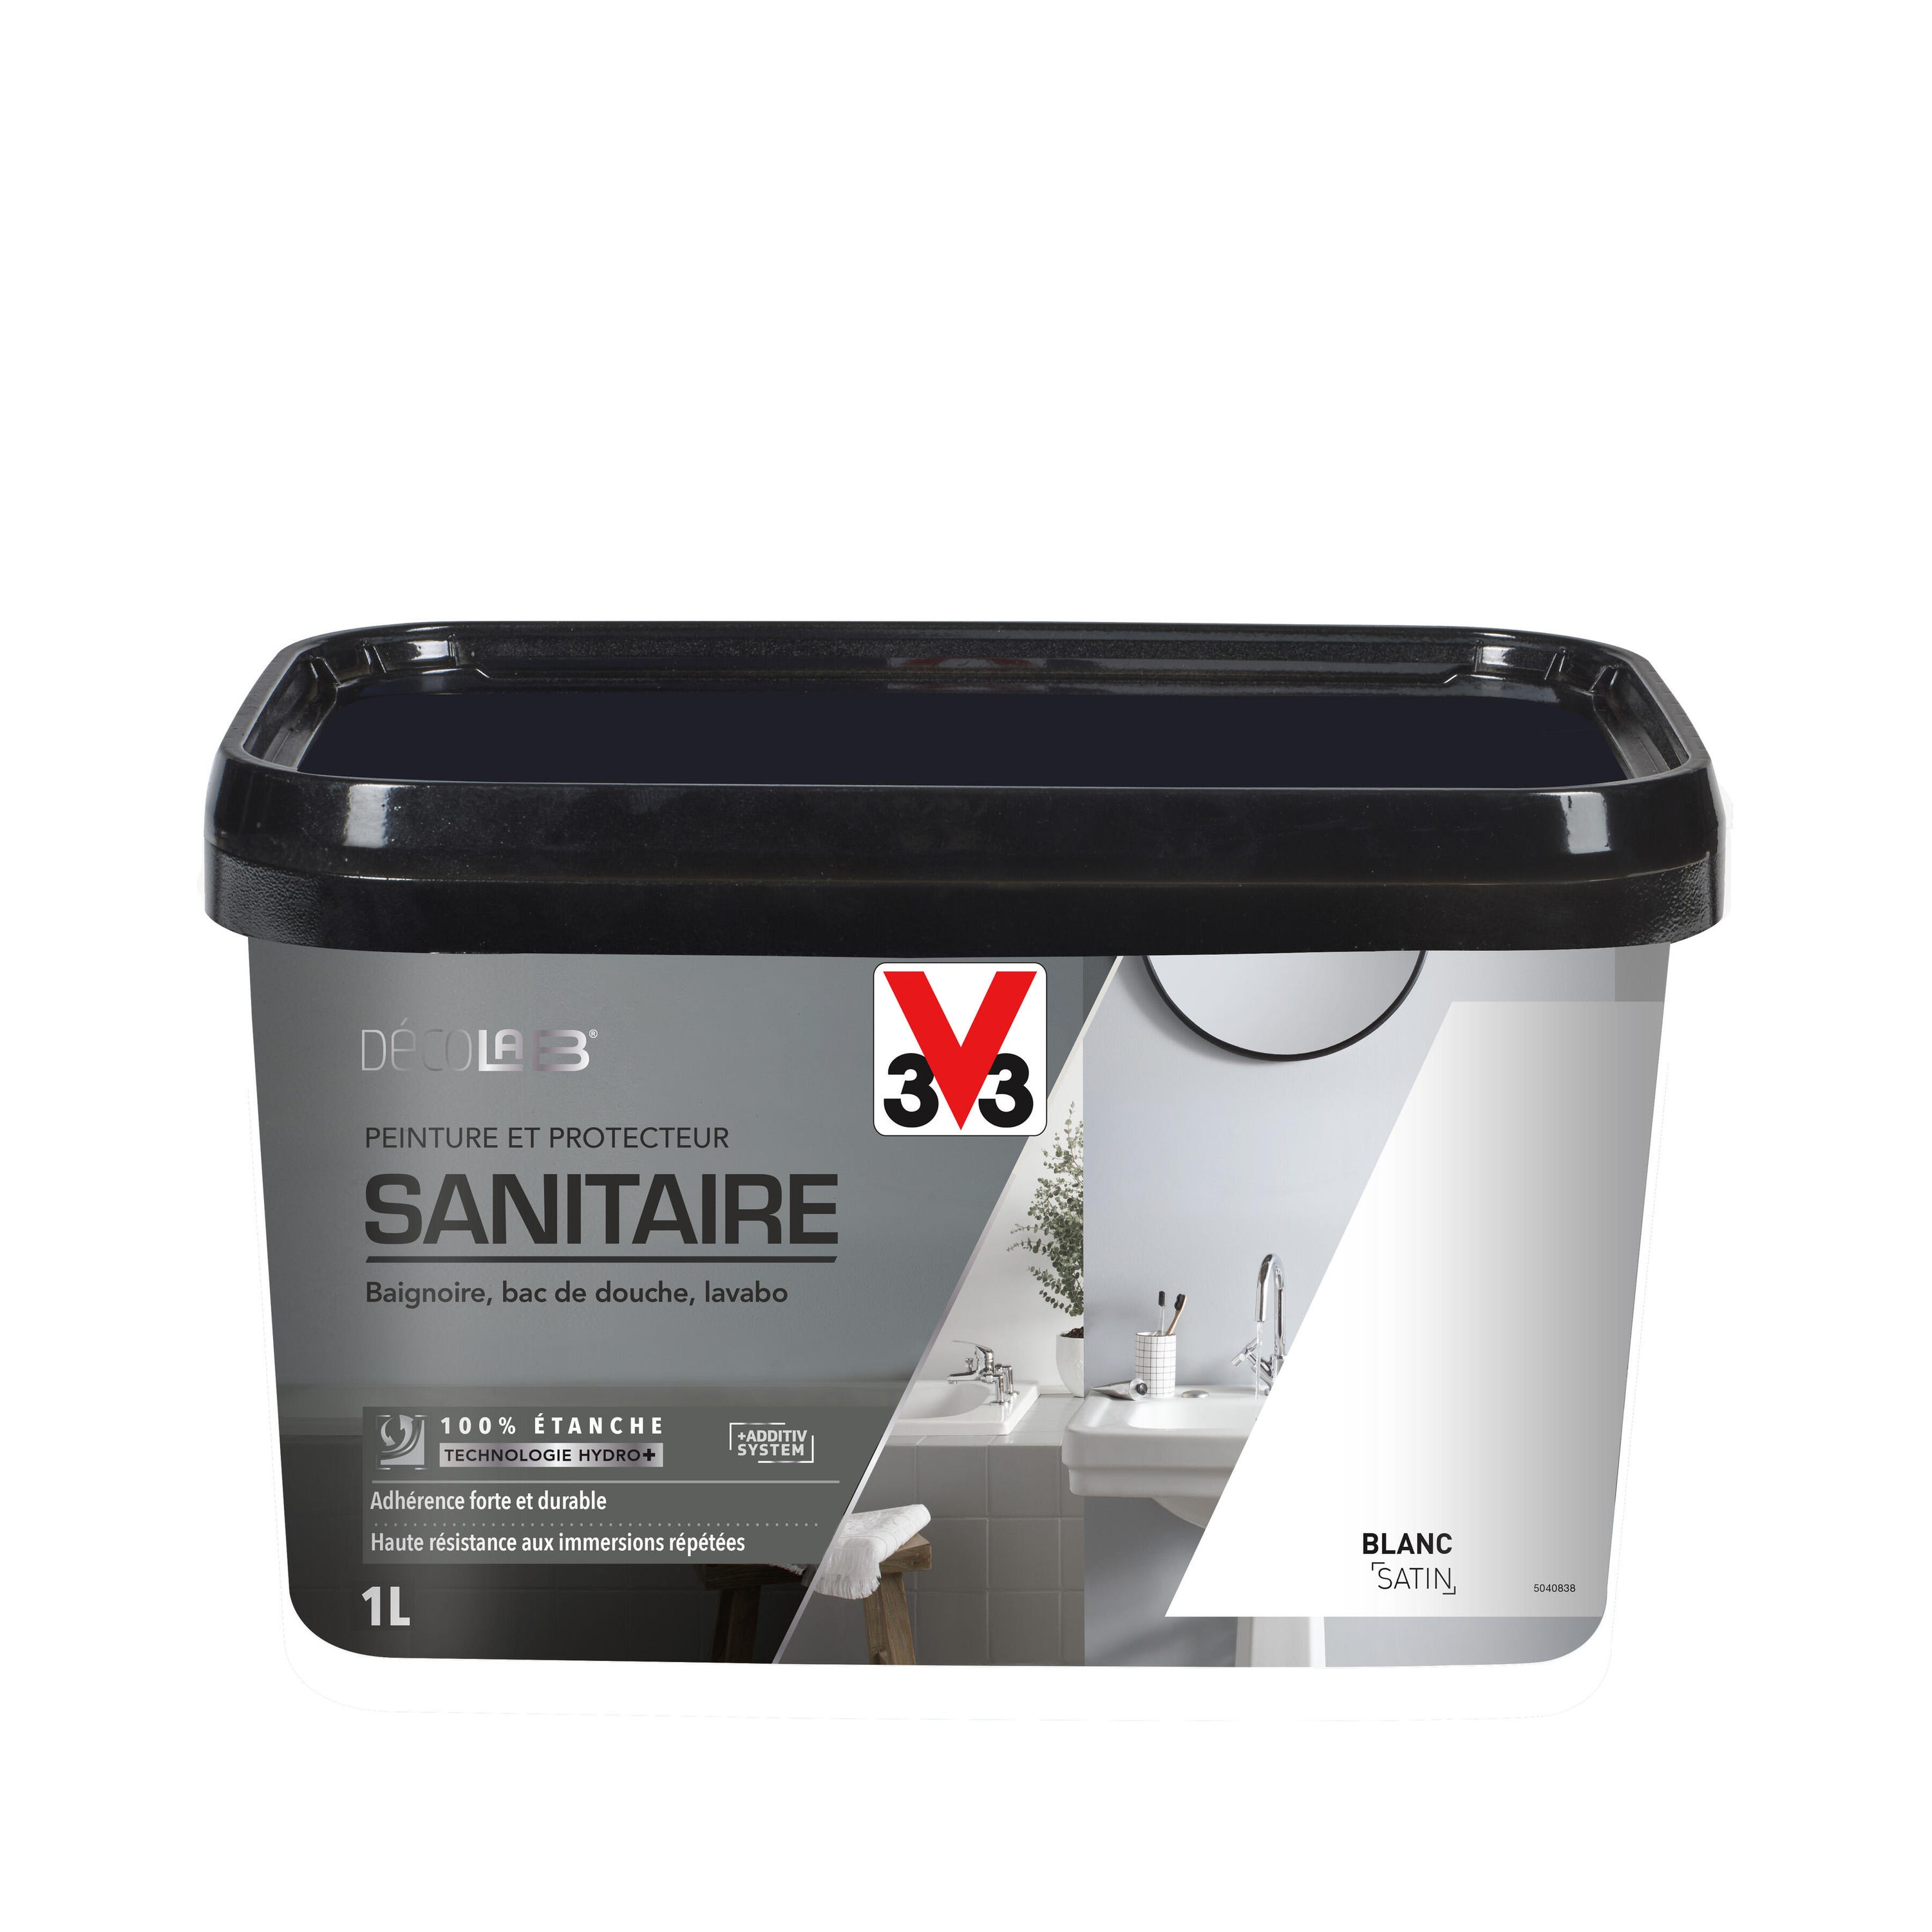 Peinture baignoire blanc satin V33 Sanitaire décolab® 1l